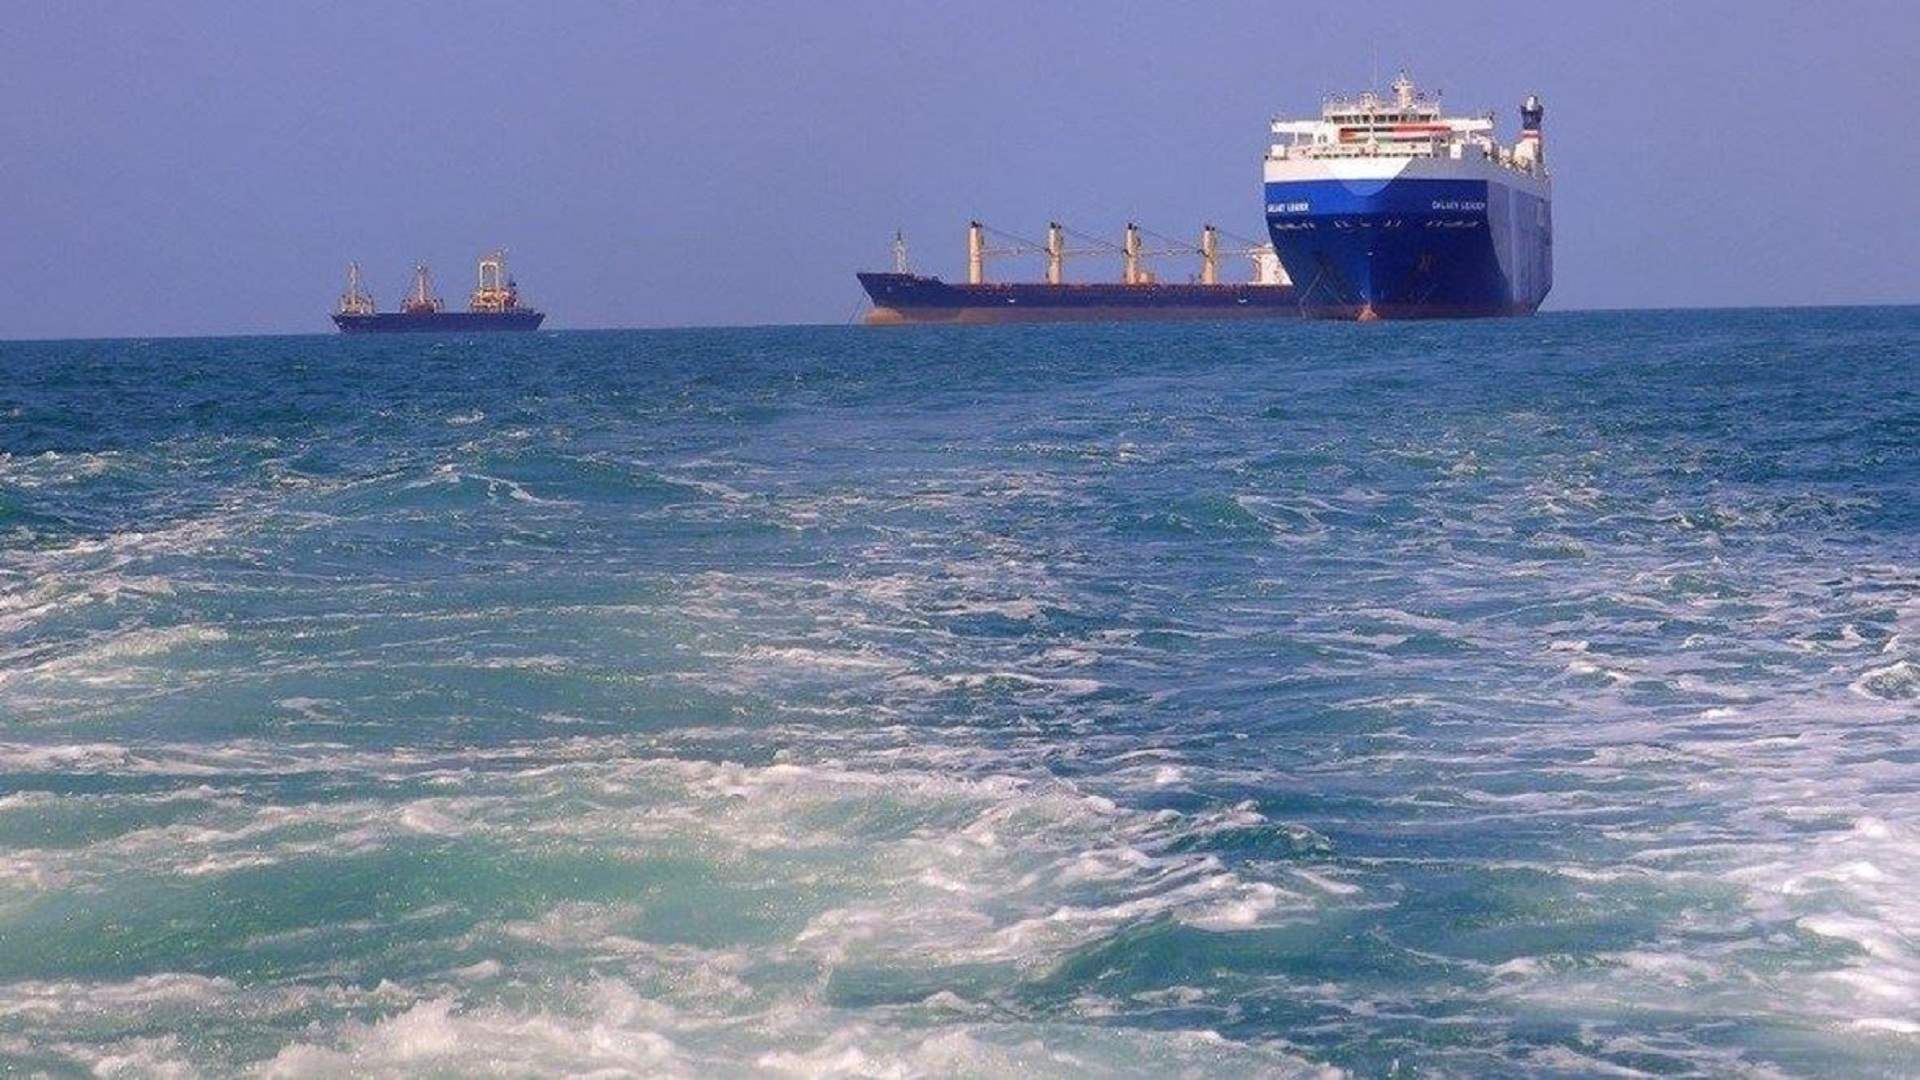 سفينة تبلغ عن تعرضها لهجوم من قبل 3 زوارق صغيرة قبالة الحديدة اليمنية